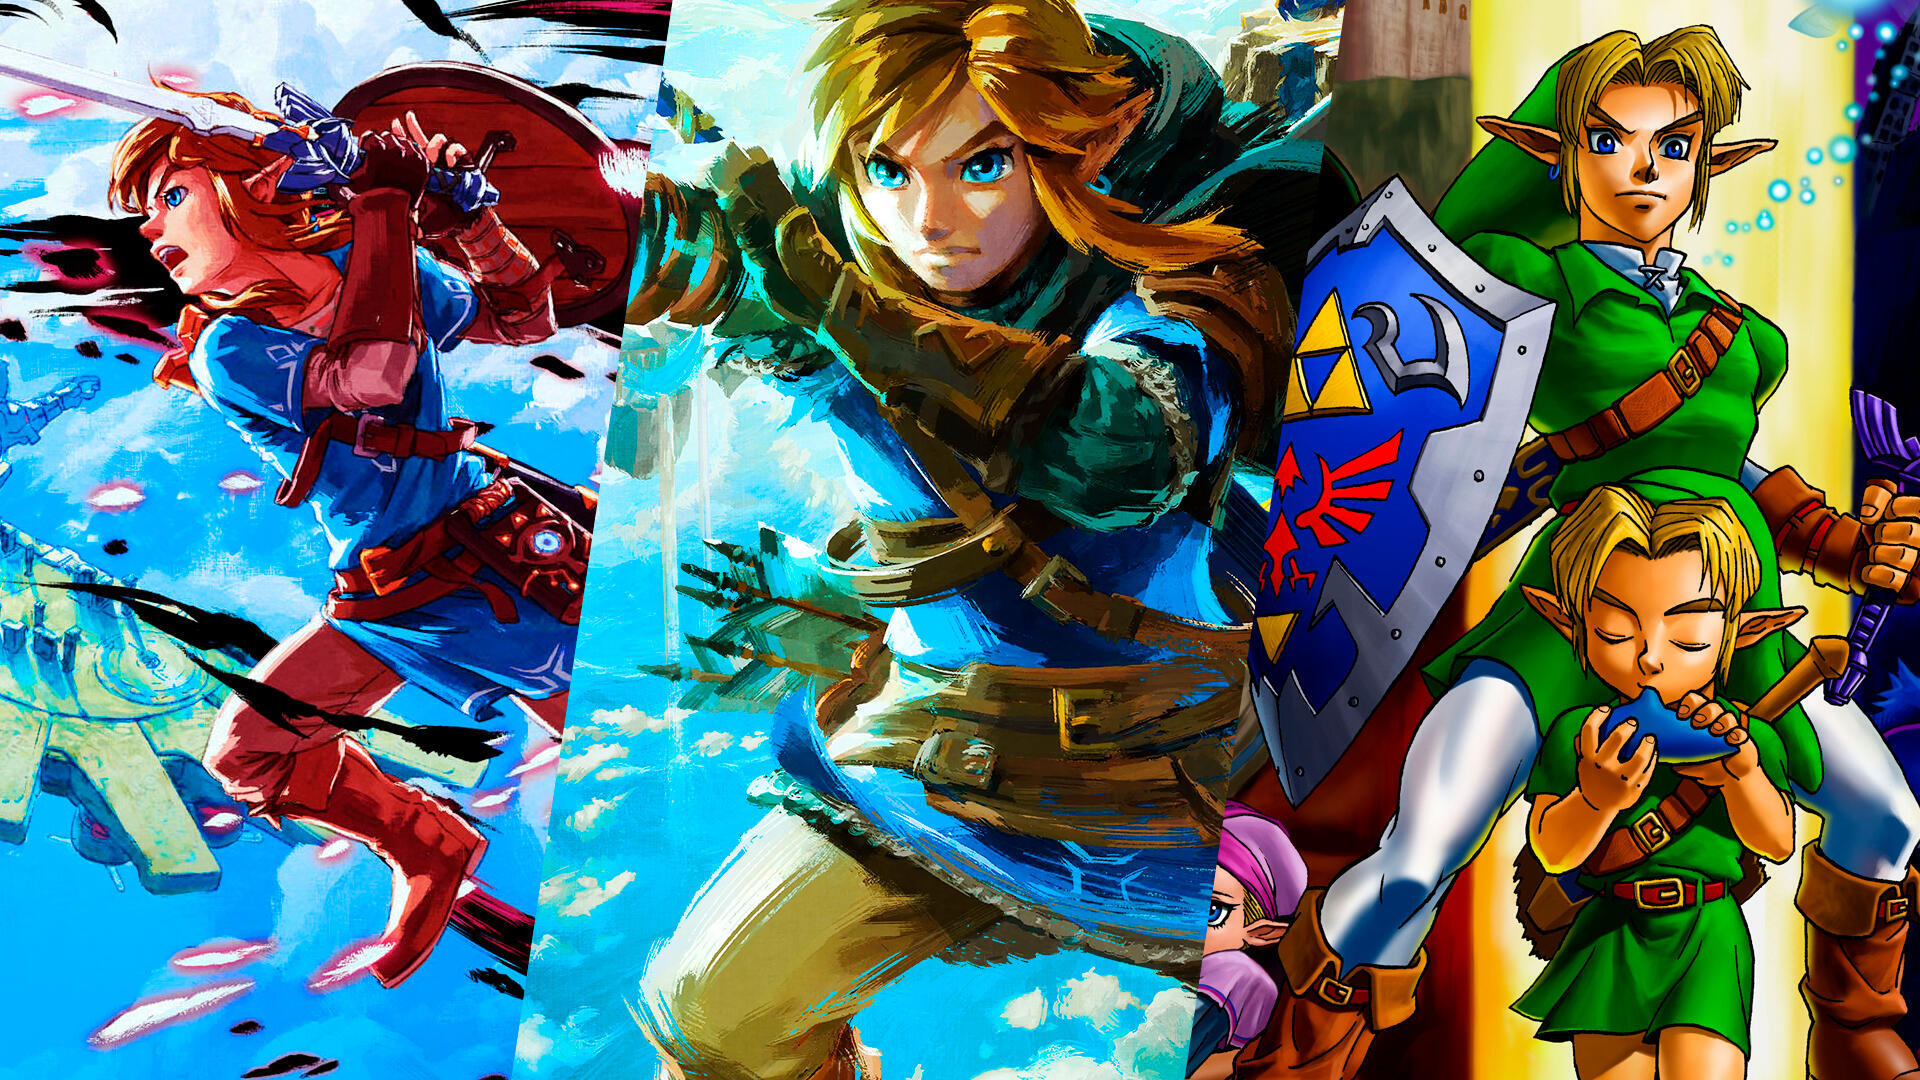 Cul es el mejor juego de The Legend of Zelda? - TOP 19